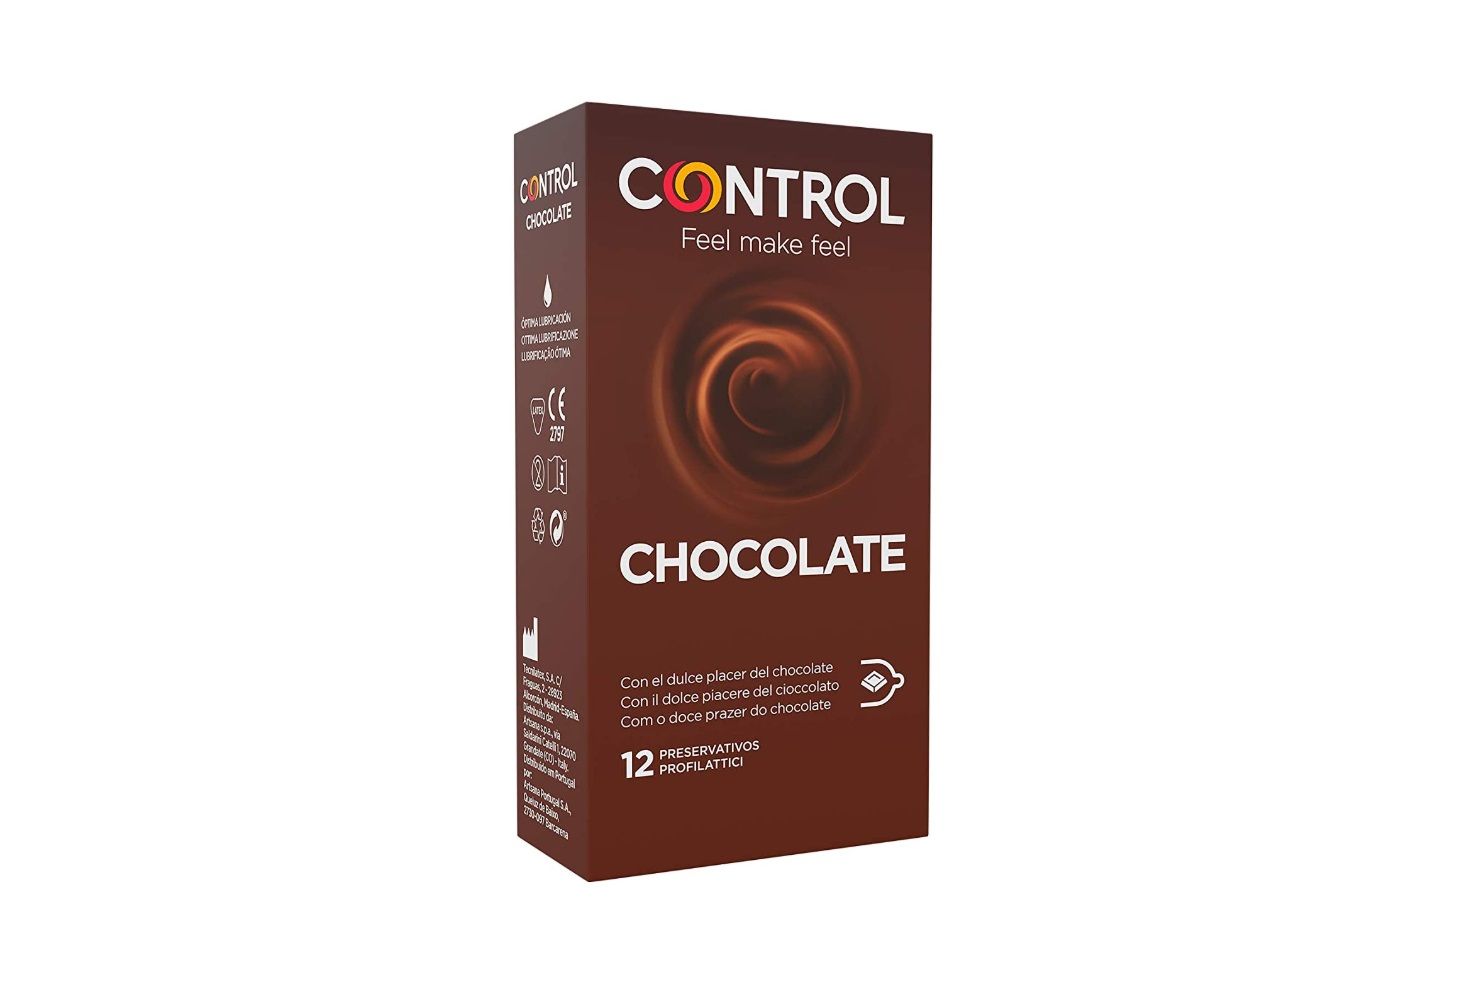 ¡Chollo! 12 preservativos de Control chocolate por sólo 5,45€ (antes 9,25€)